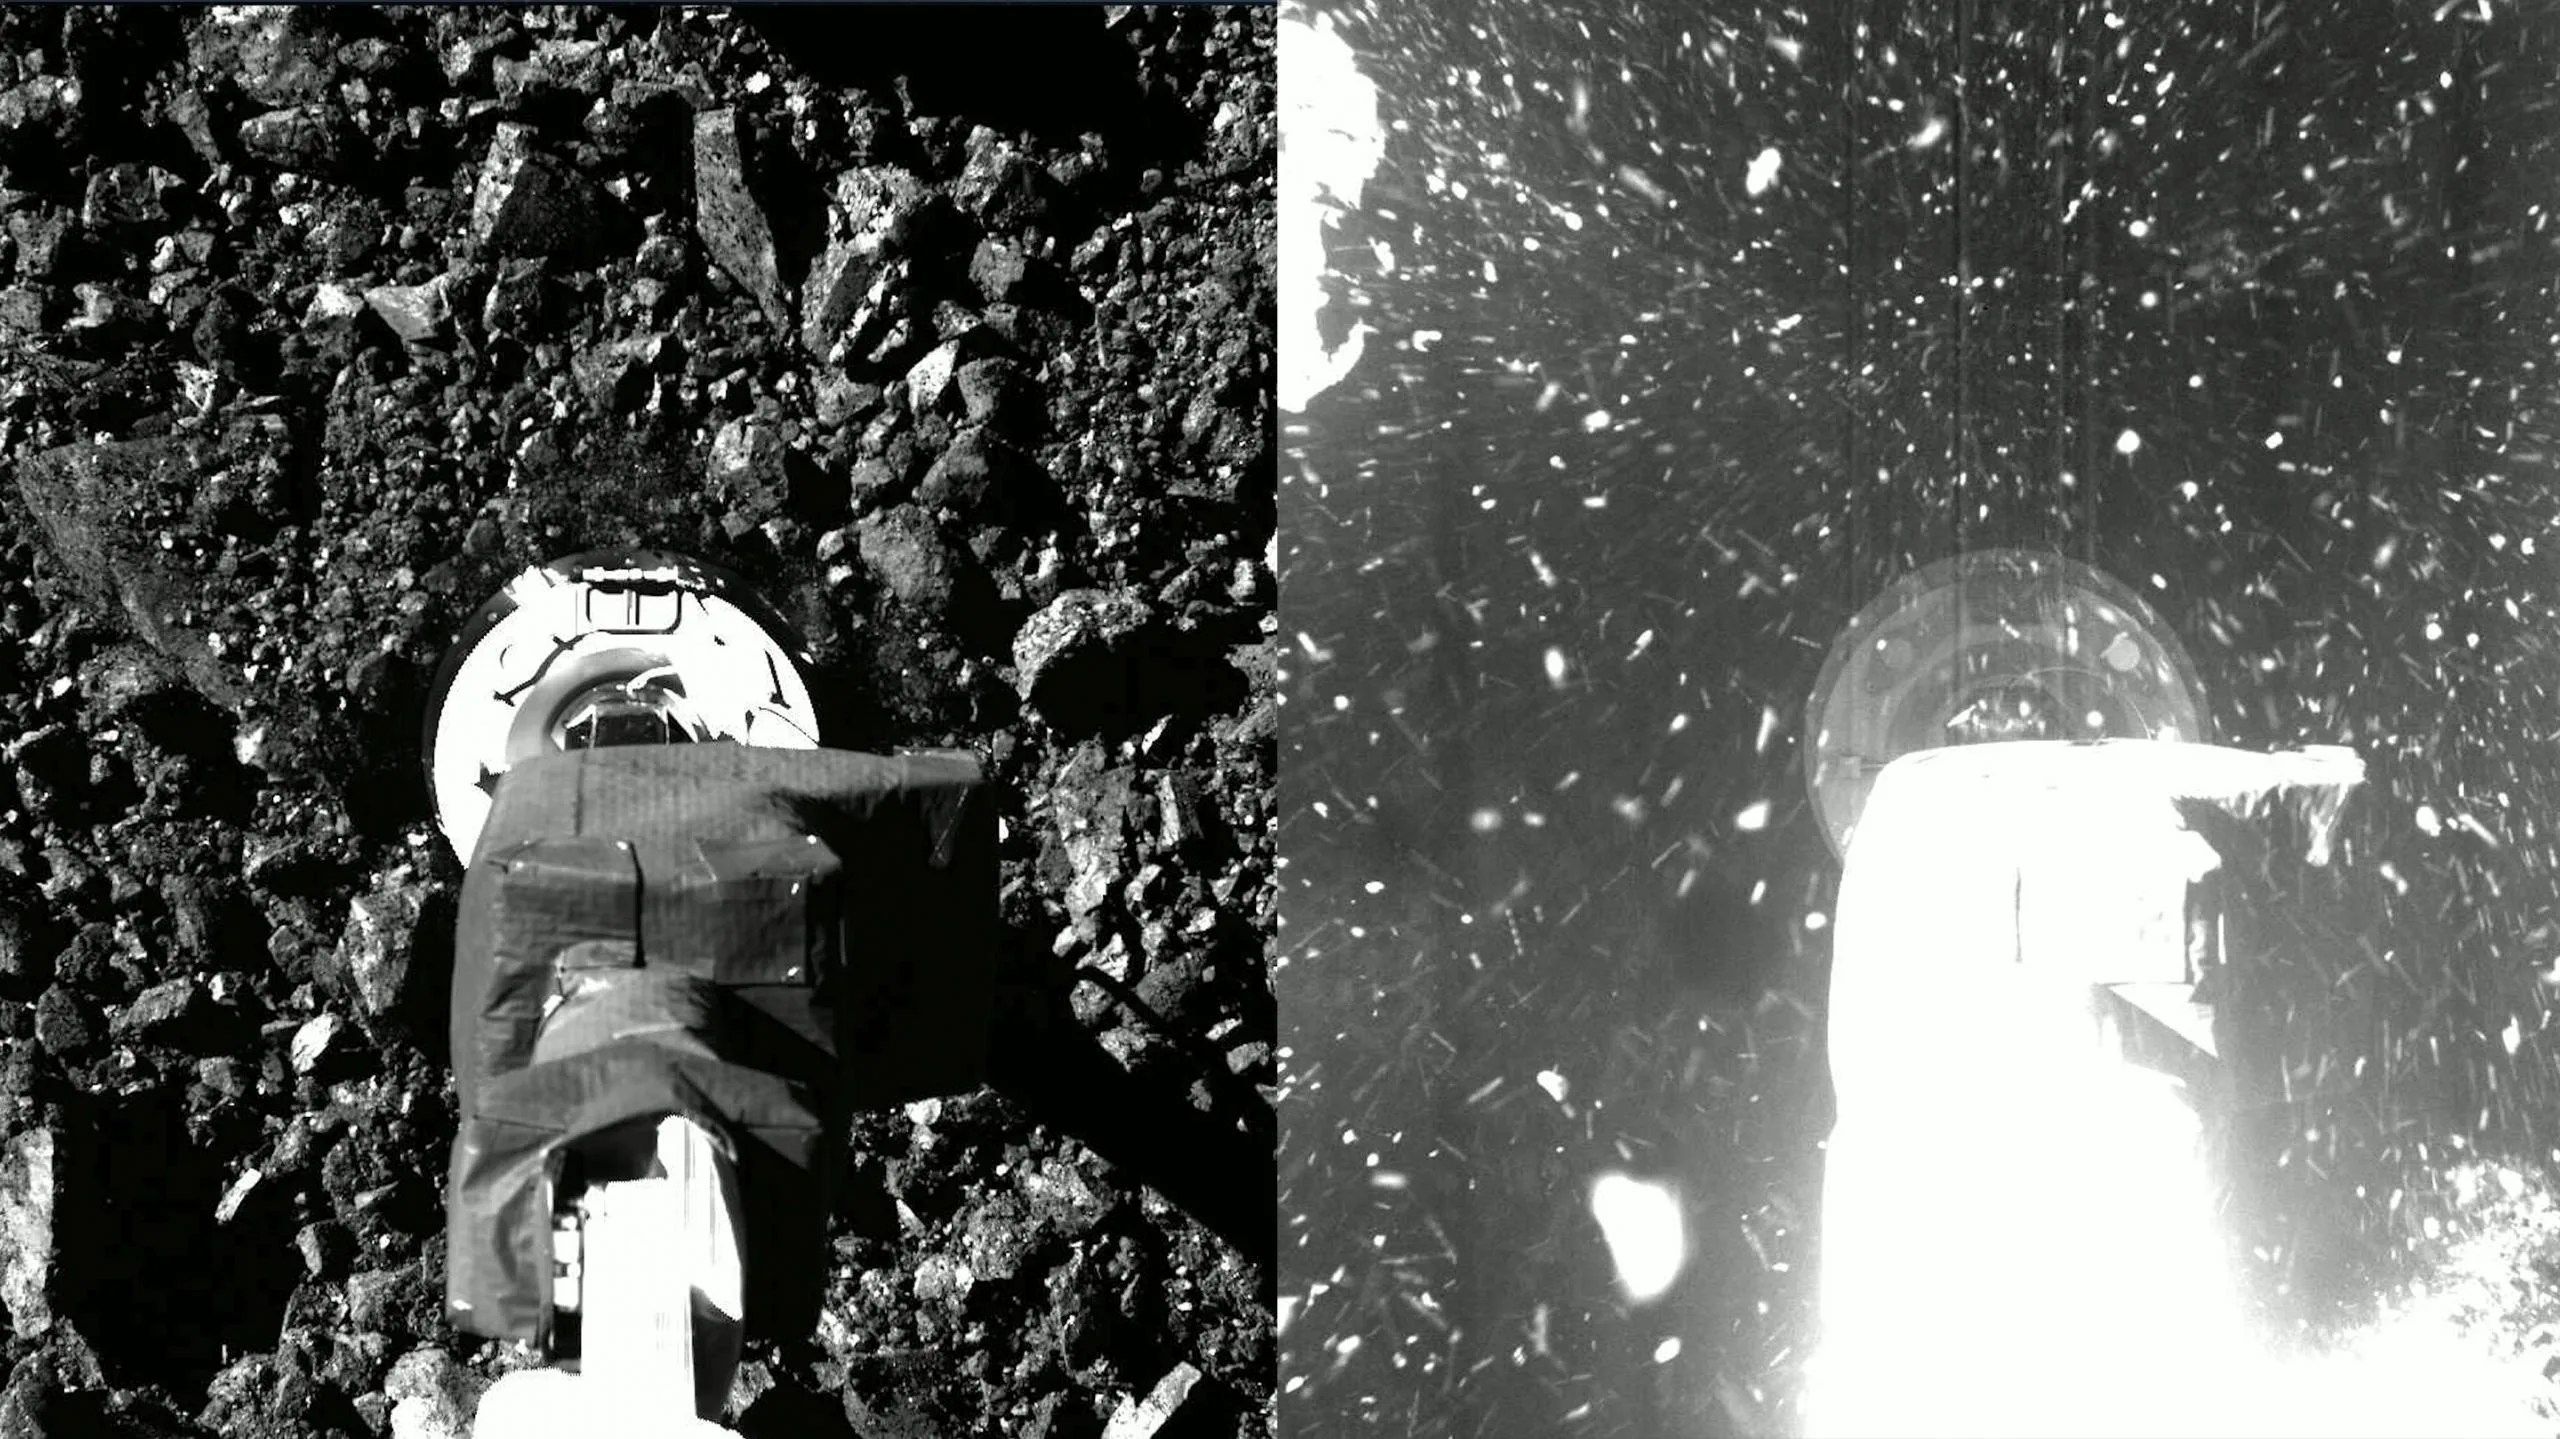 mágenes contiguas del brazo robótico de la nave espacial OSIRIS-REx de la NASA mientras desciende hacia la superficie del asteroide Bennu (izquierda) y mientras lo sacude ligeramente para agitar el polvo y las piedras para su recolección de muestras (derecha). OSIRIS-REx aterrizó en Bennu a las 6:08 pm hora del Este del 20 de octubre de 2020. Créditos: Centro de Vuelo Espacial Goddard de la NASA.